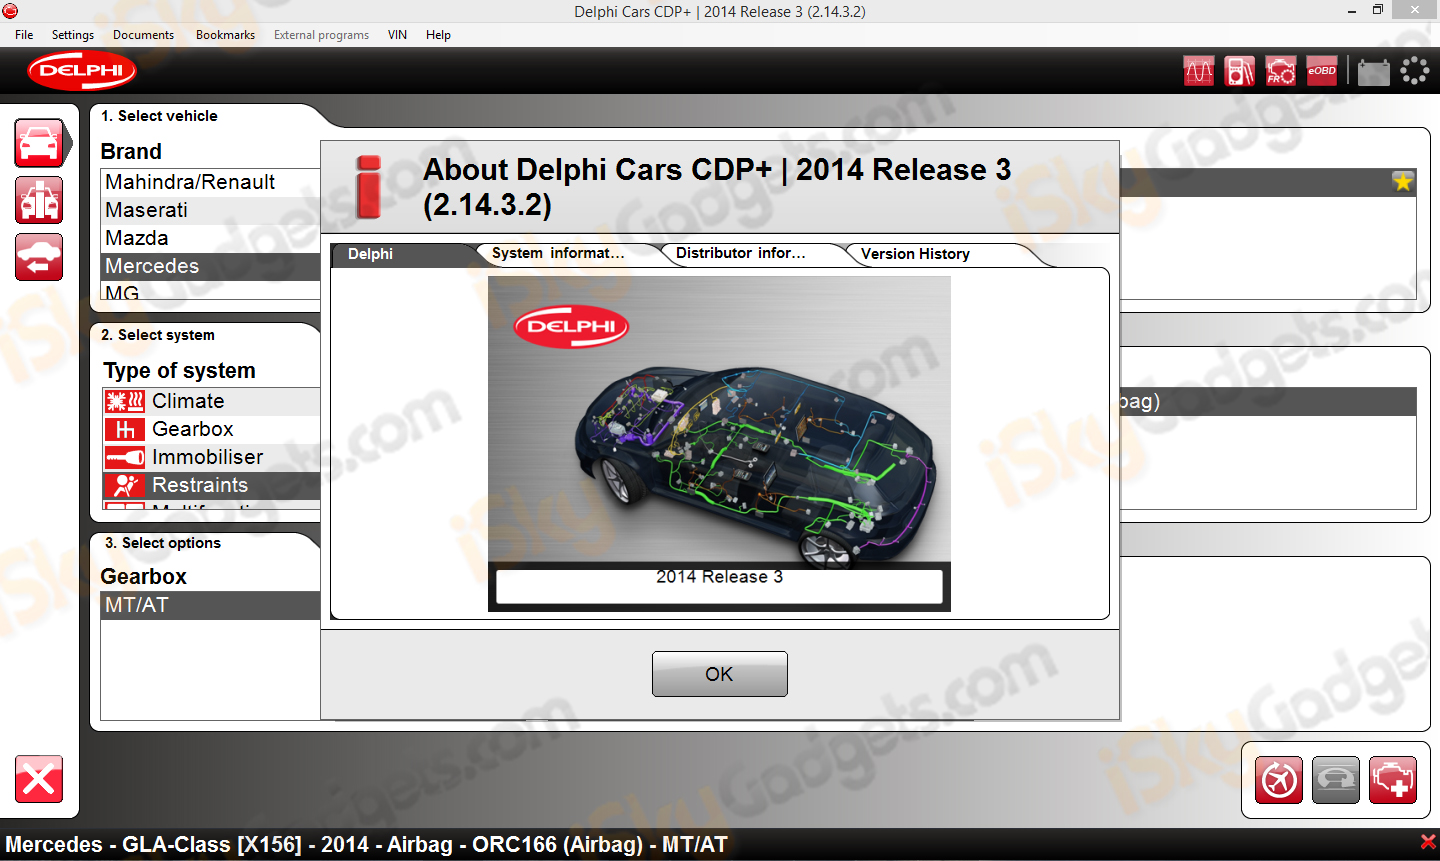 delphi download free